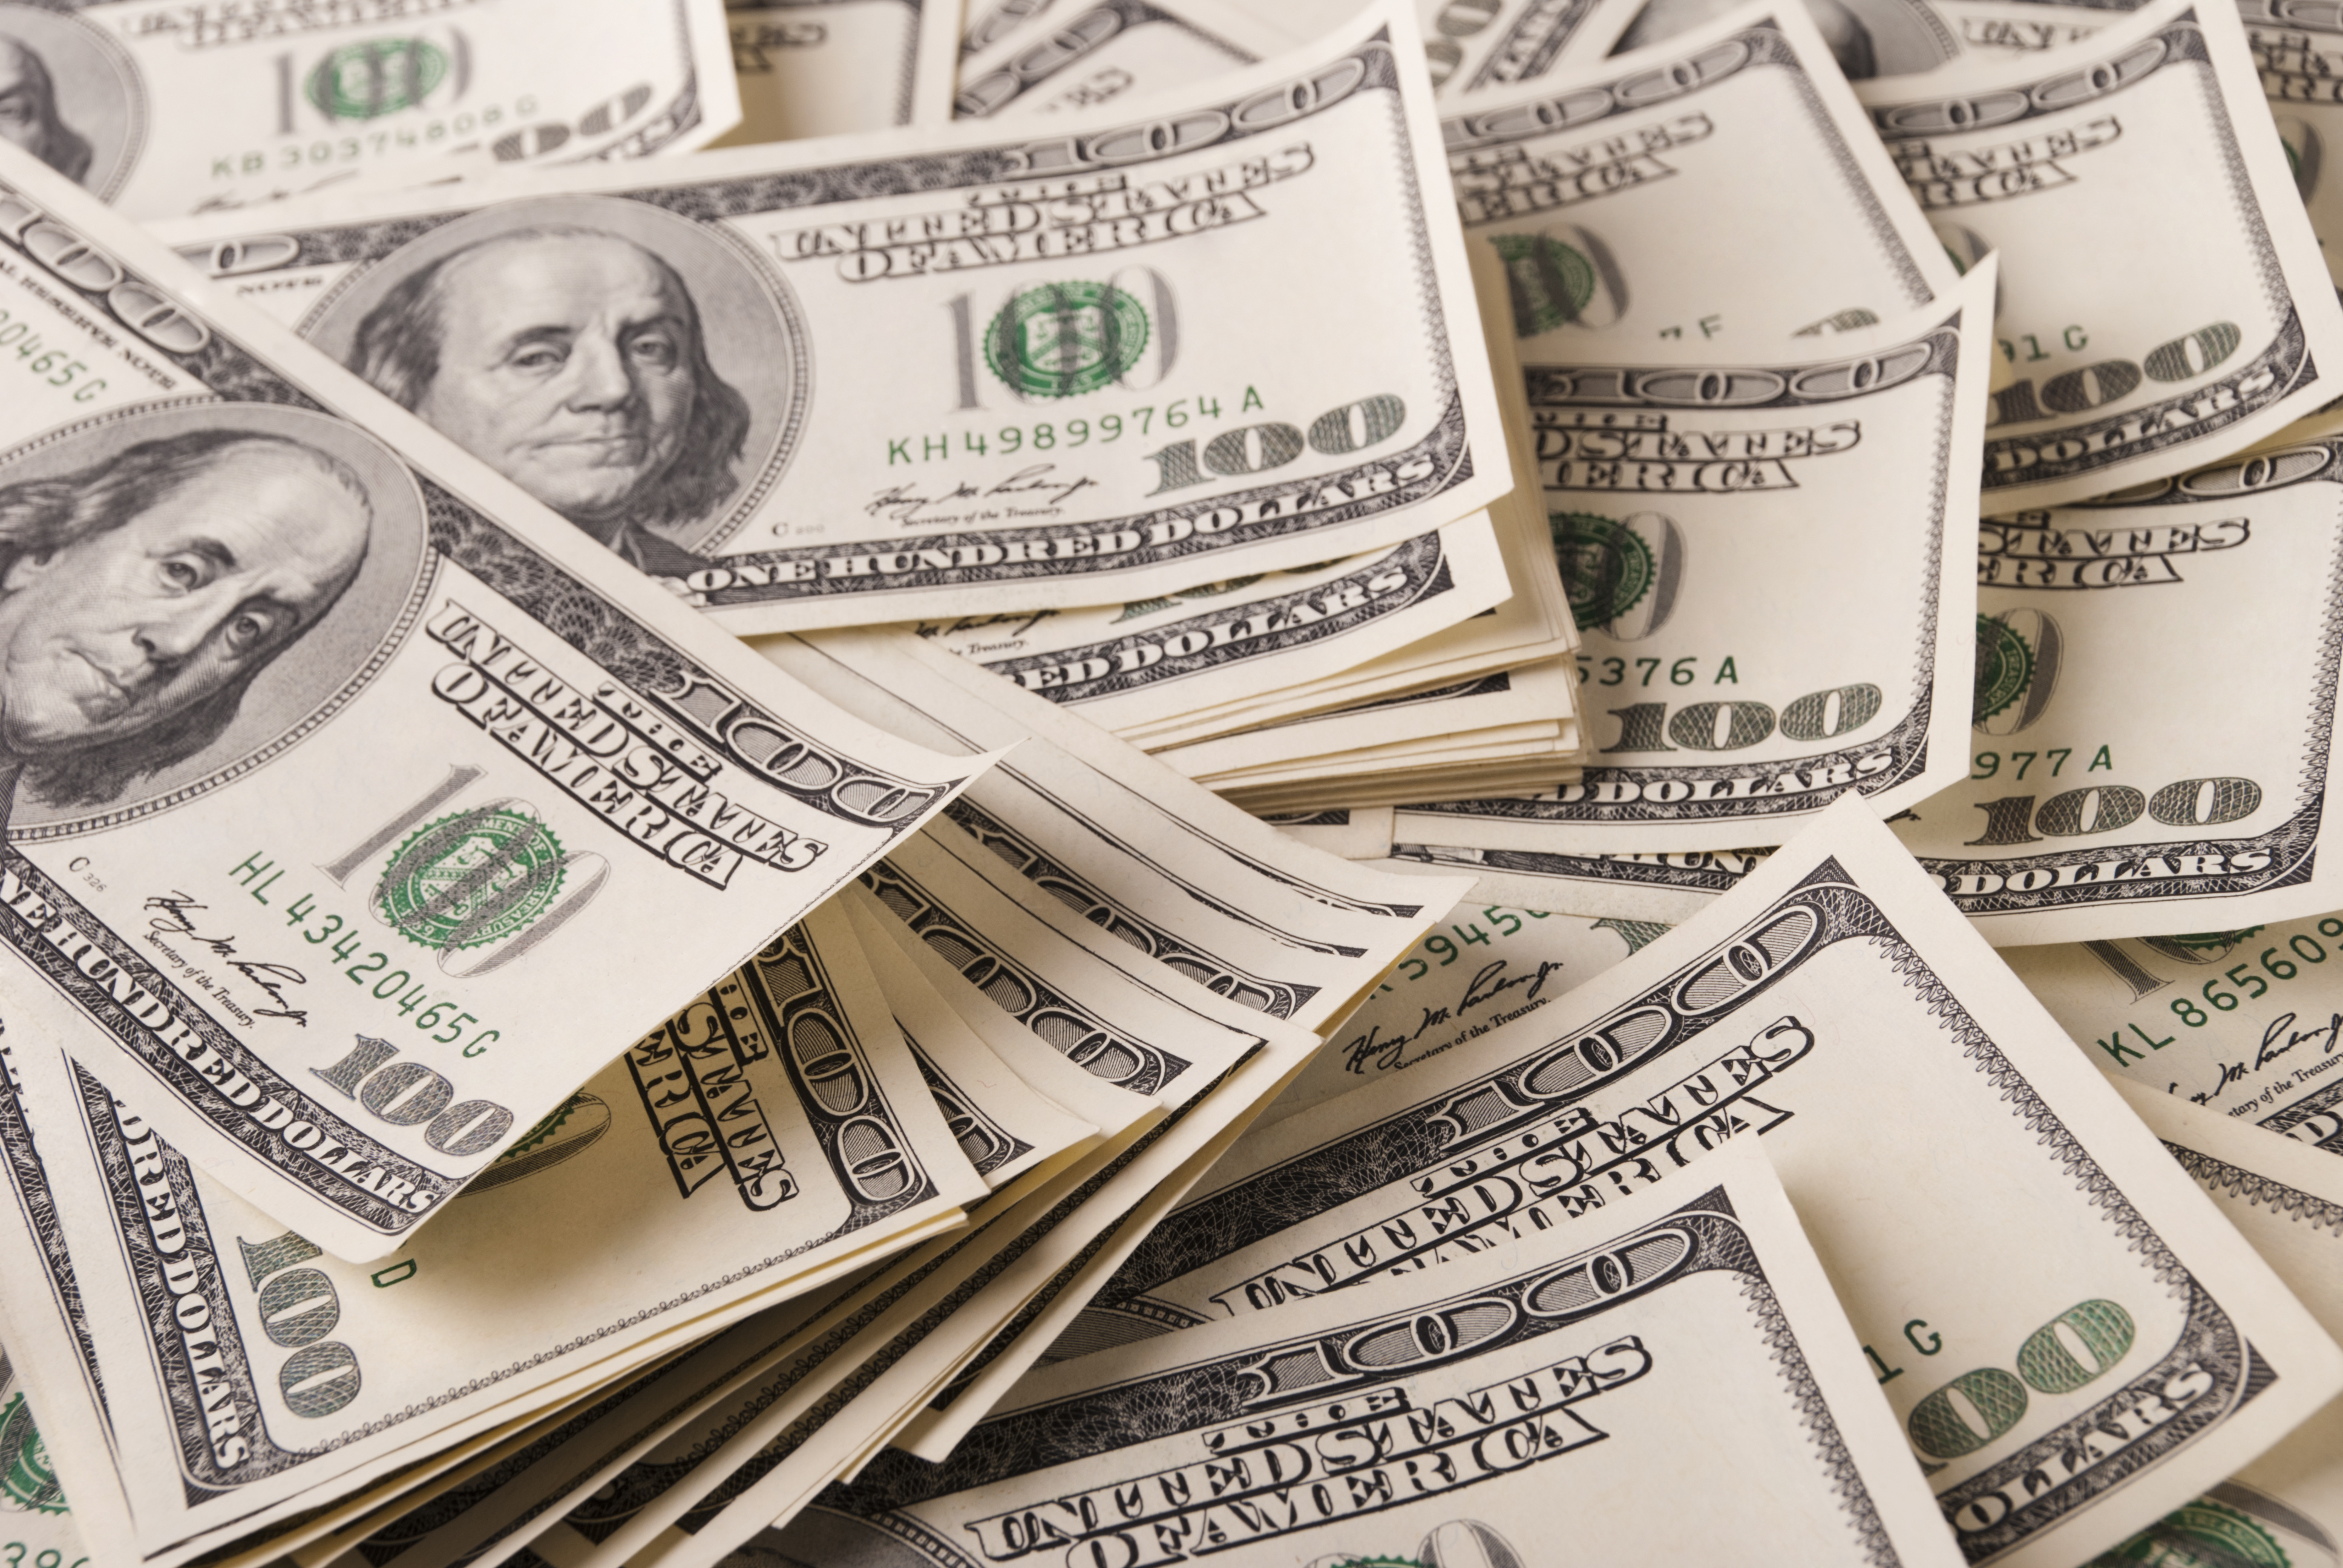 A pile of $100 dollar bills | Source: Shutterstock